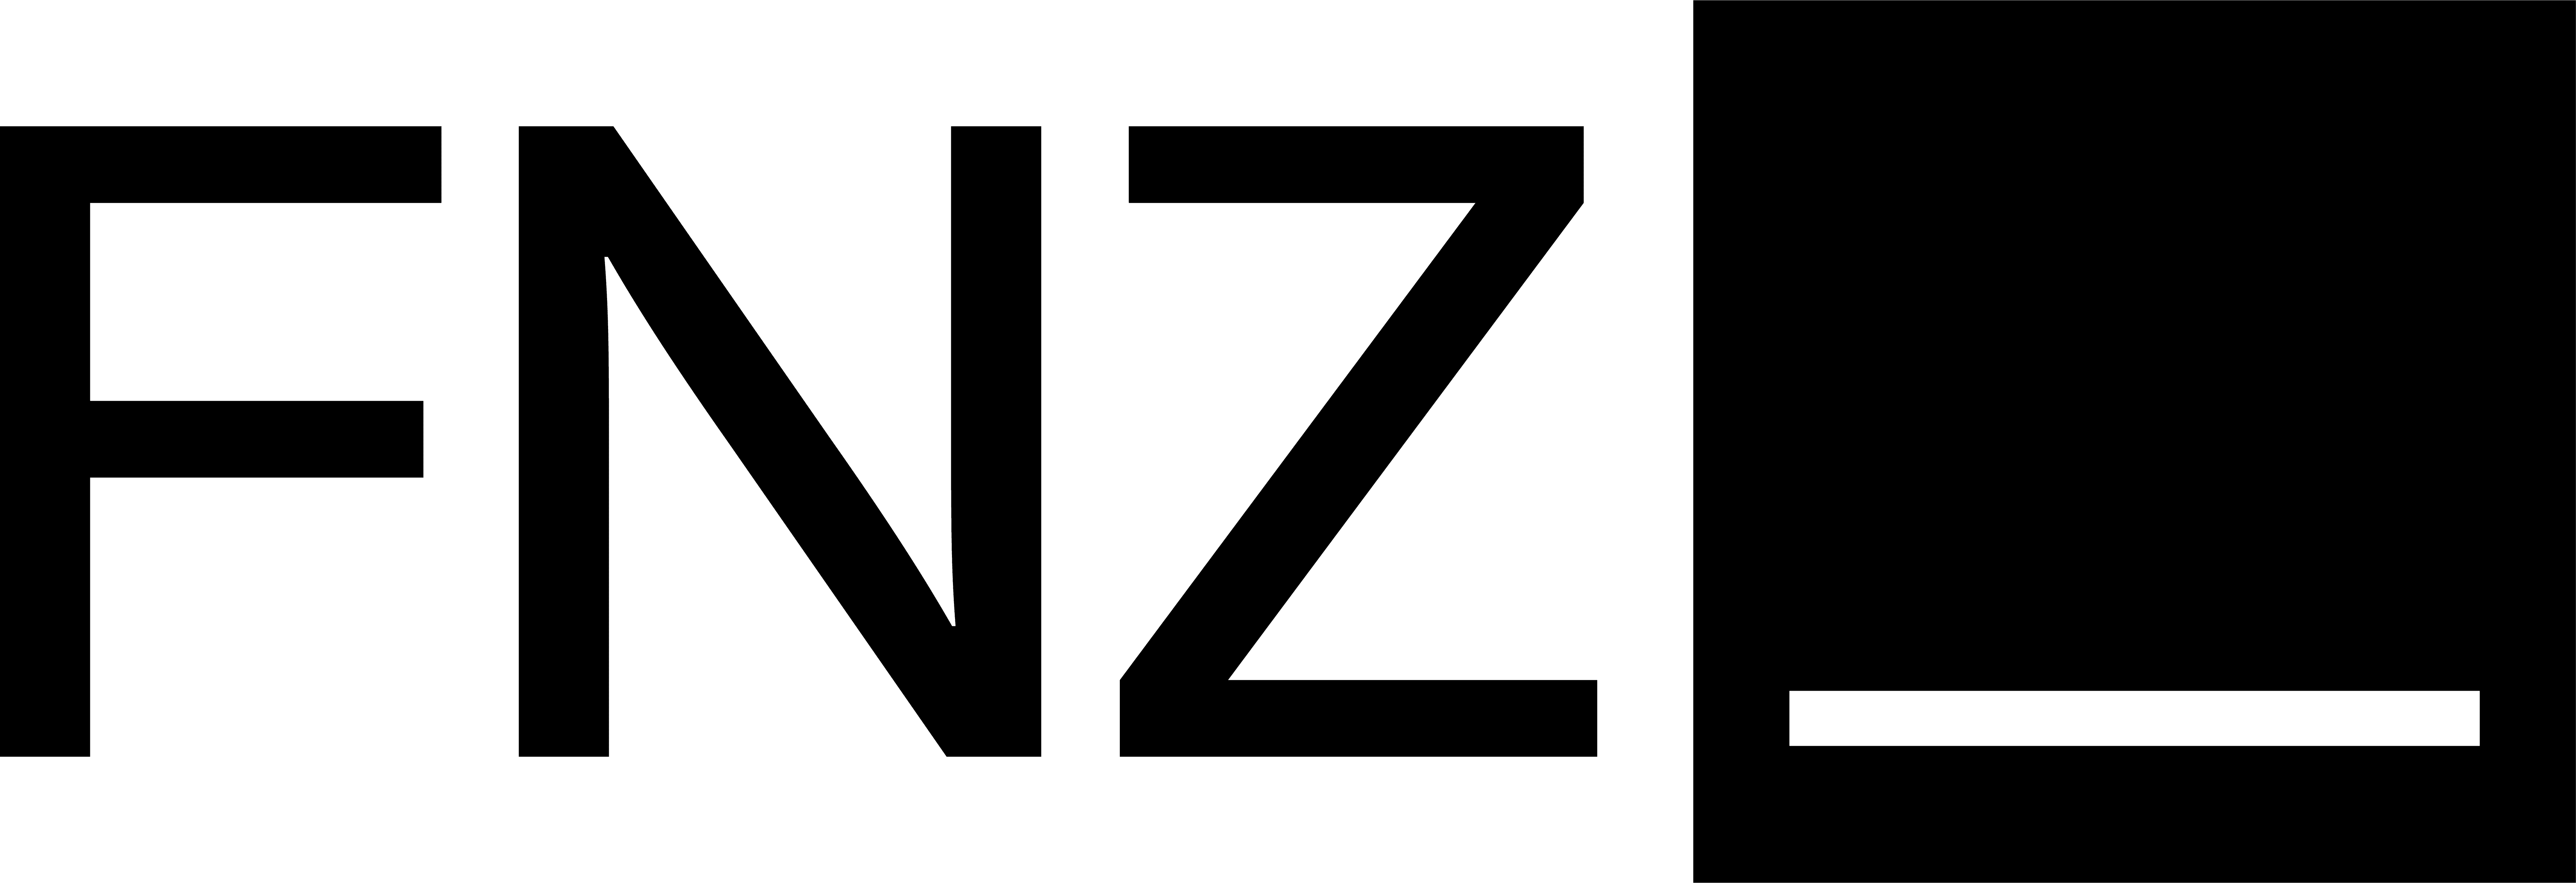 FNZ Bank Depot